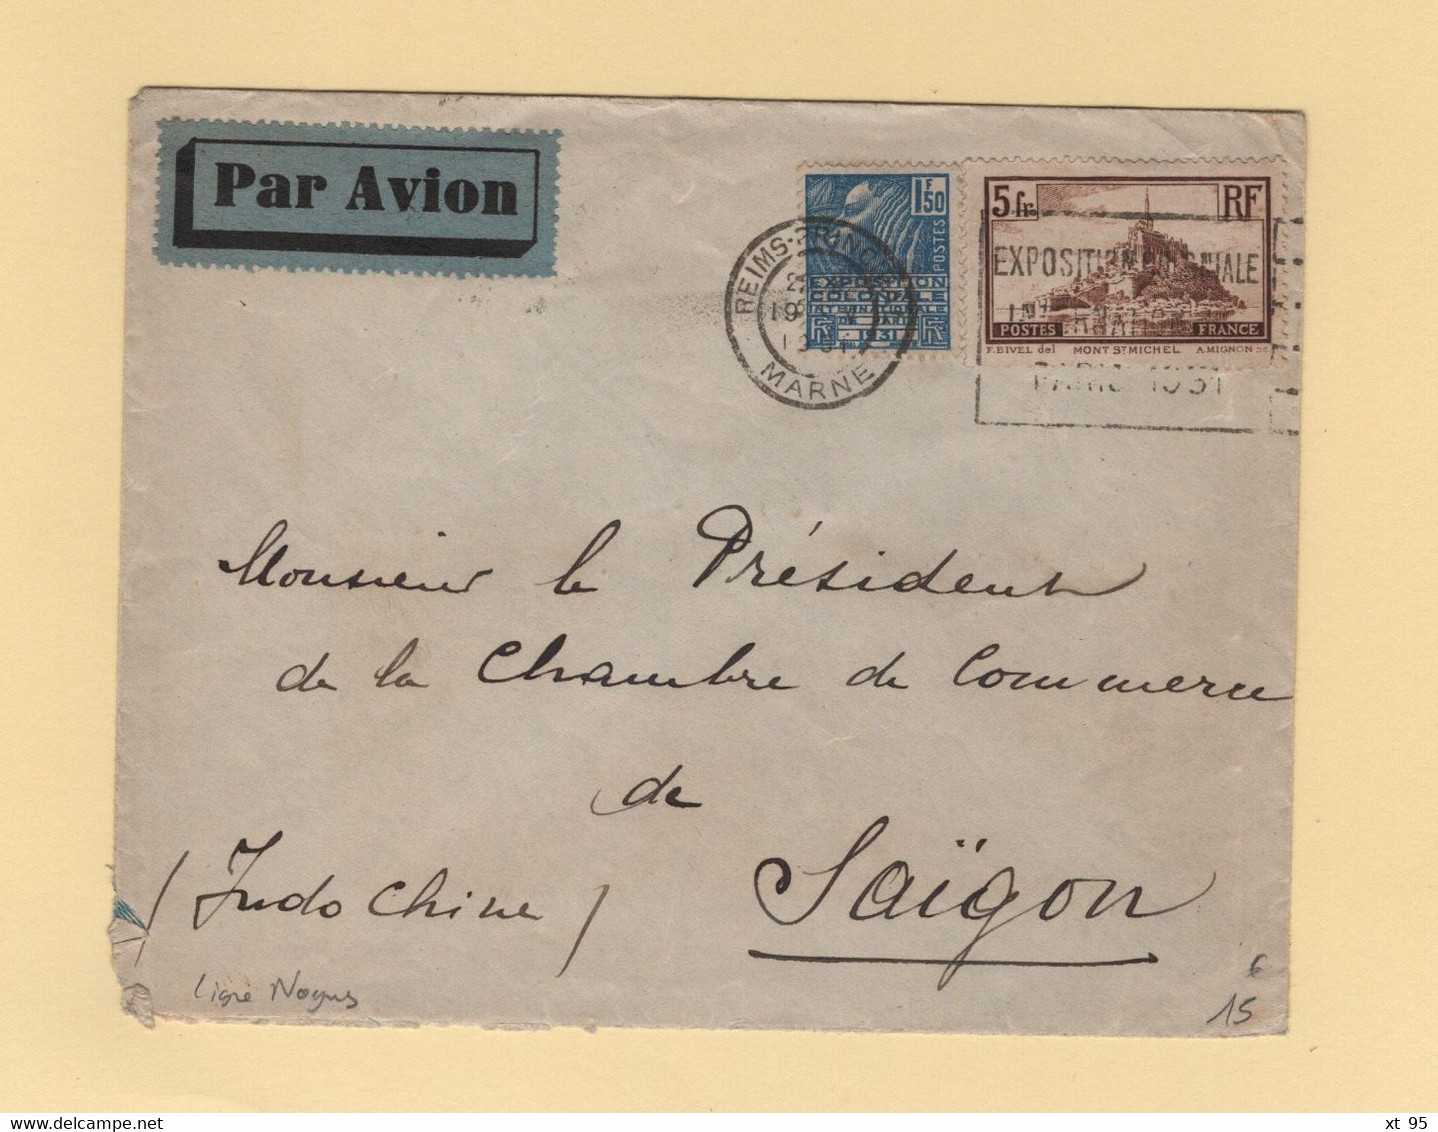 Ligne Nogues - 19-5-1931 - Destination Saigon Cochinchine - Reims - Arrivee Le 29-5-1931 - Par Avion - 1927-1959 Briefe & Dokumente